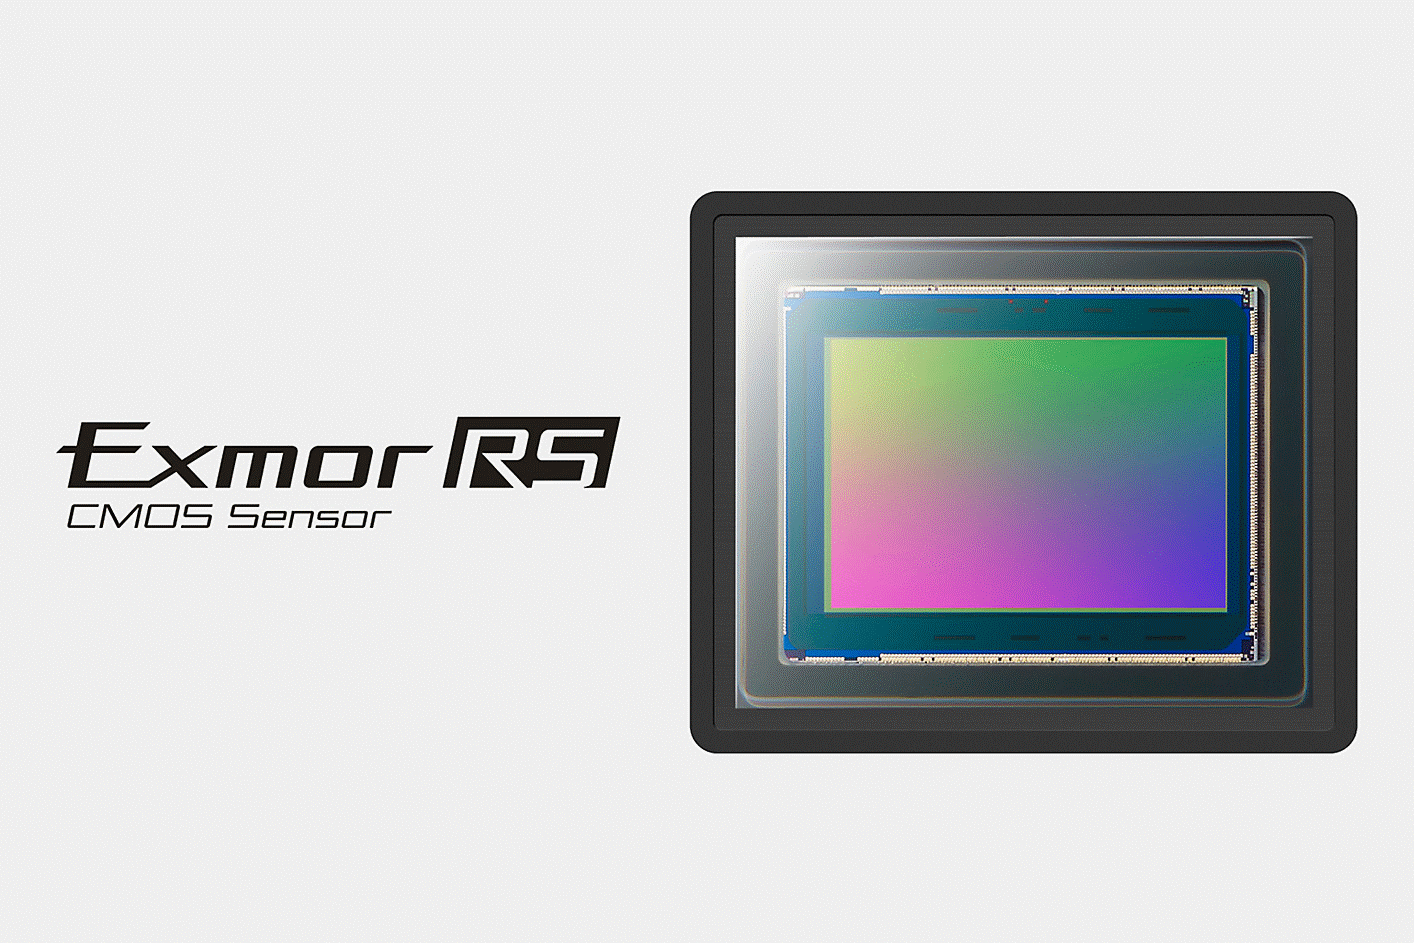 Exmor RS CMOS image sensor